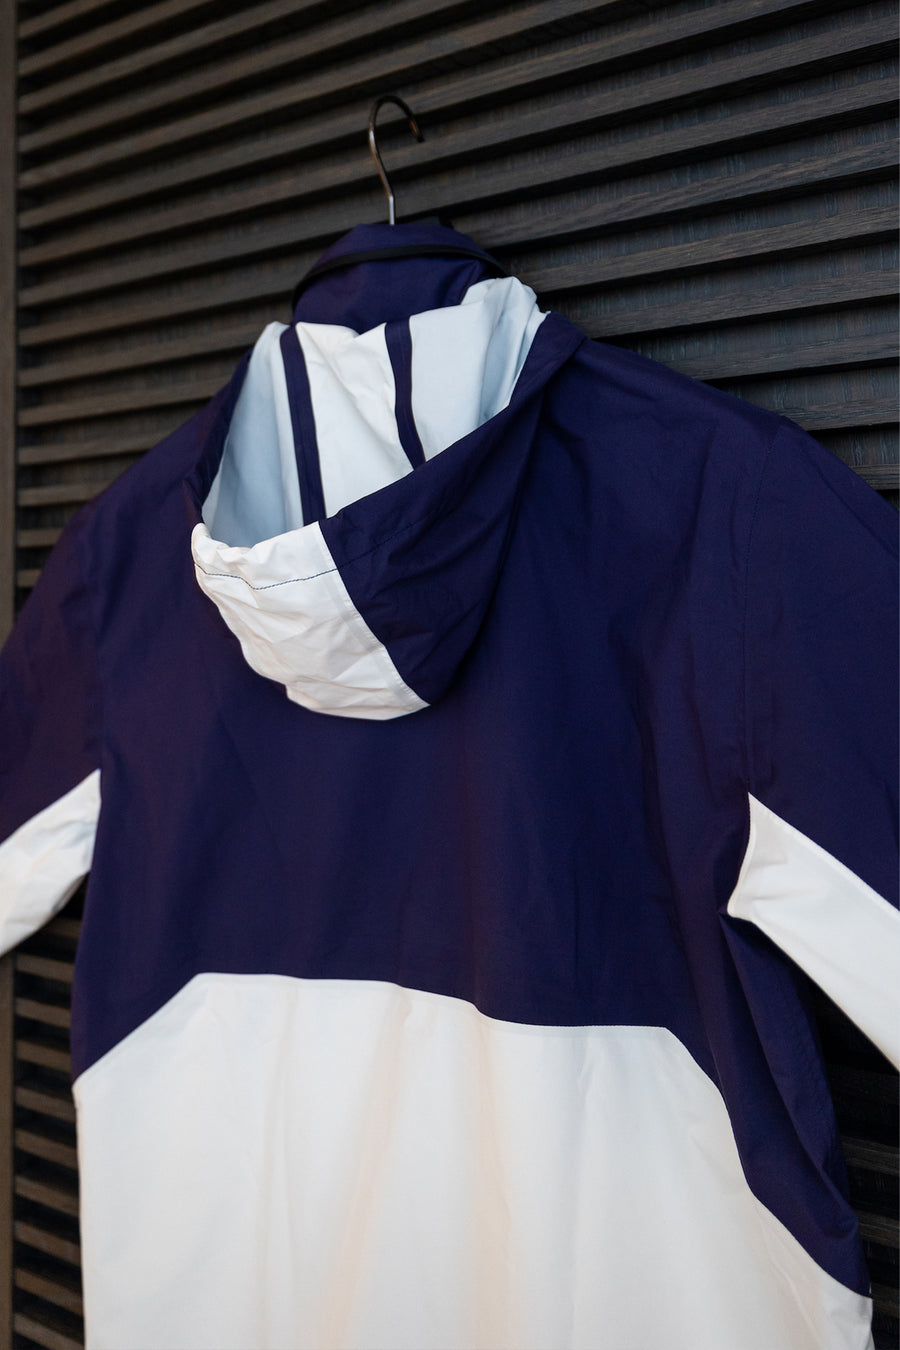 Stylish blue and white Equinox Hotels sailing jacket.